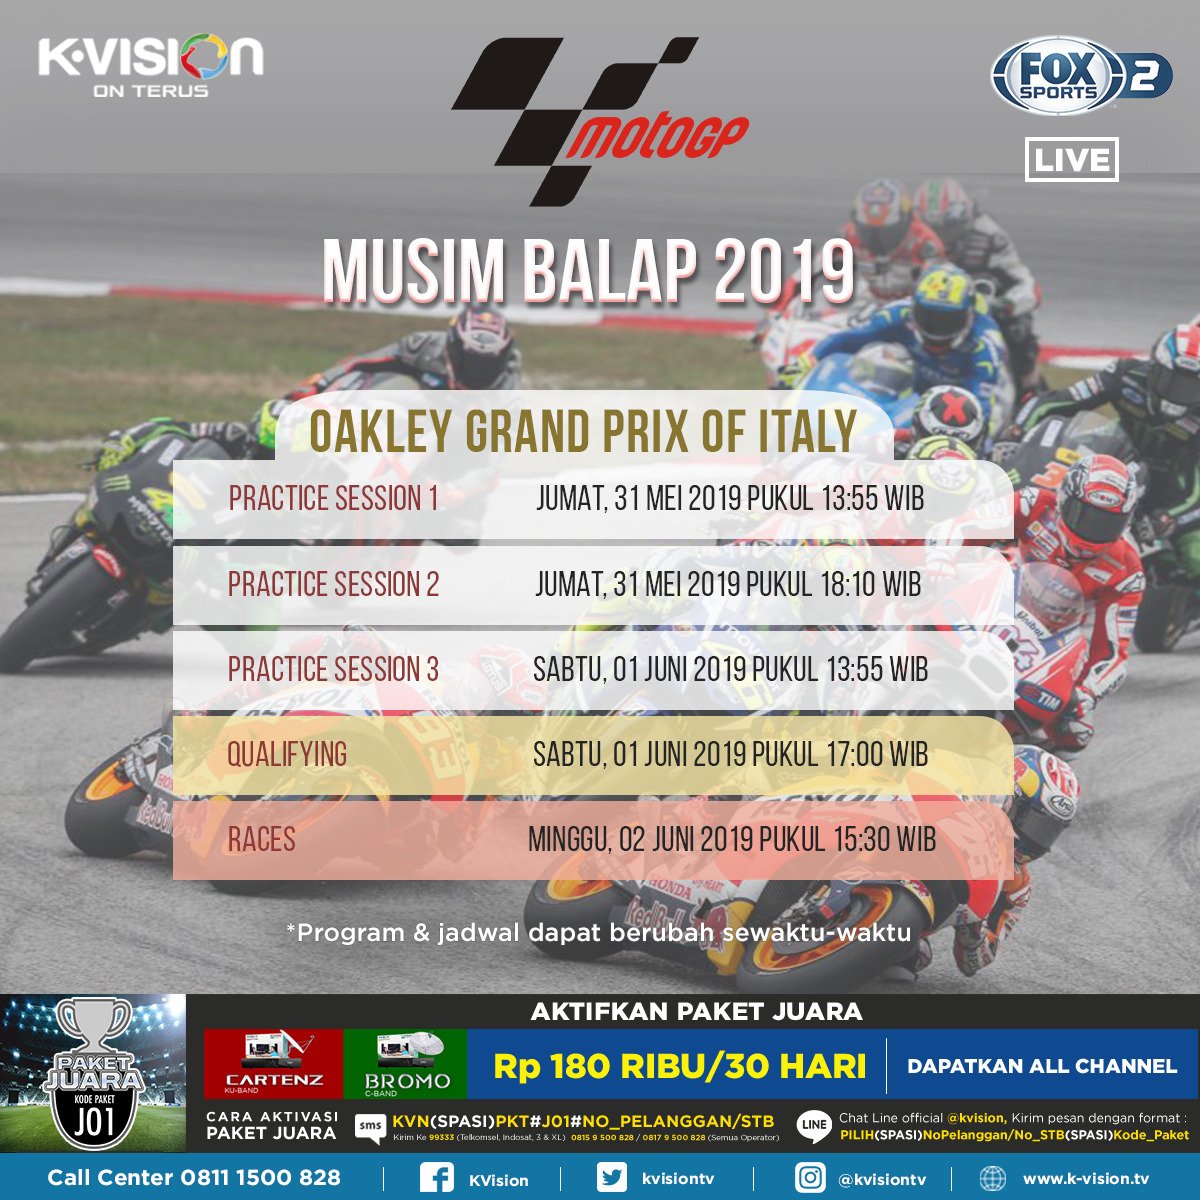 MotoGP pekan ini bakal digelar di Sirkuit Mugello, Italia!

Jangan lewatkan OAKLEY GRAND PRIX OF ITALY, mulai hari Jumat, pukul 13:55 WIB, LIVE di FOX Sports 2, hanya di K-Vision On Terus!

#kvision #kvisiononterus #MotoGP #MotoGPItaly